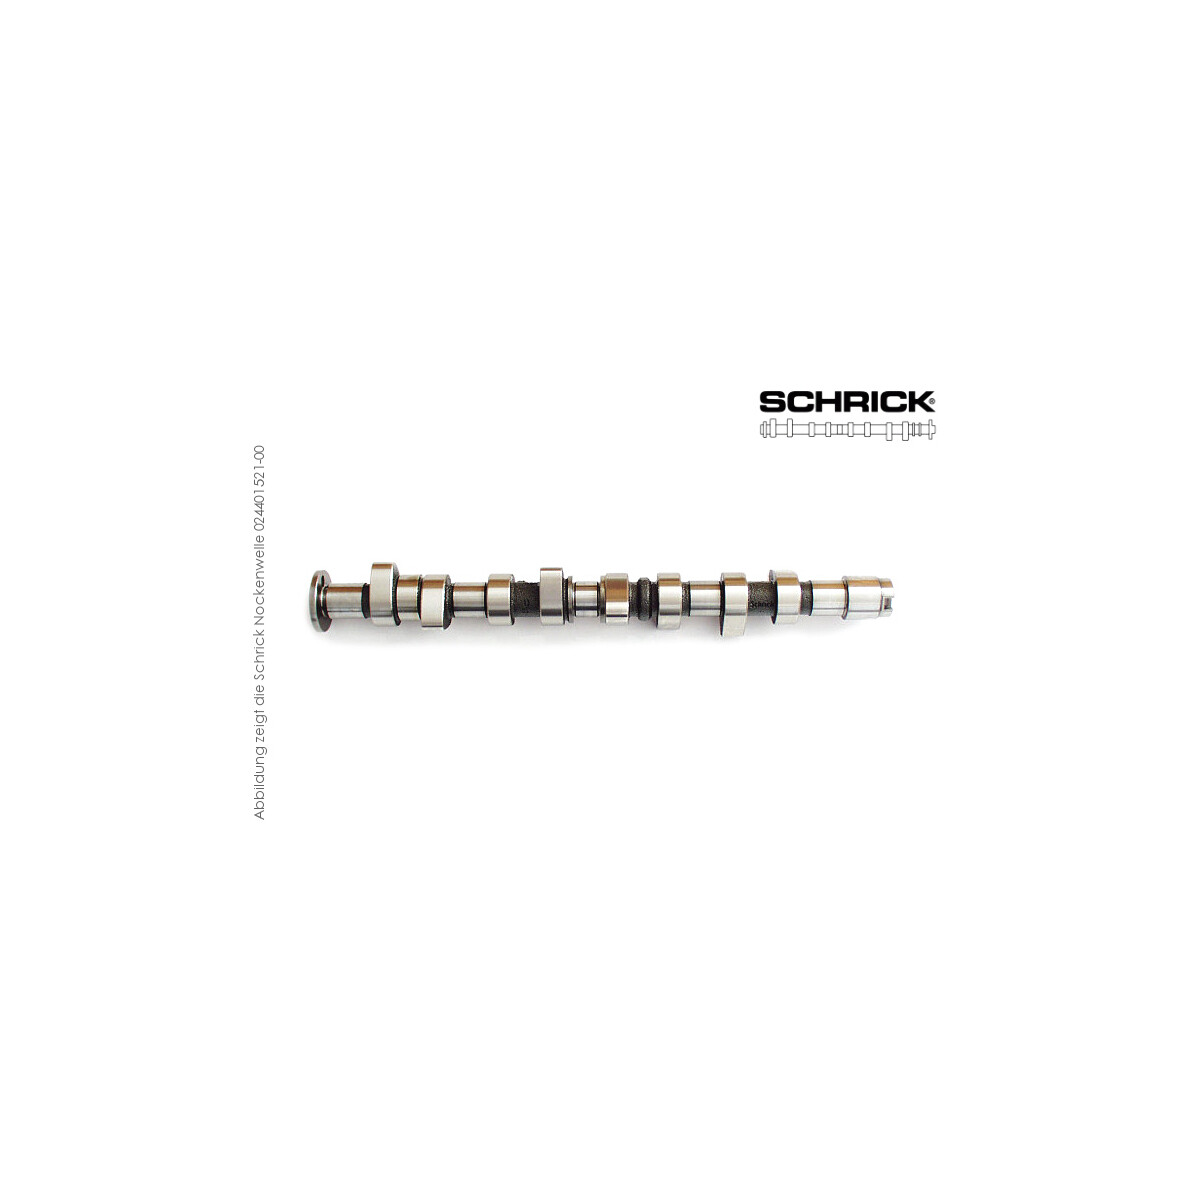 Schrick Nockenwelle für Skoda Octavia | 1,5-2,0L 8V 4-Zyl. 827  | 272° Synchron (Schrick 001401721-02)